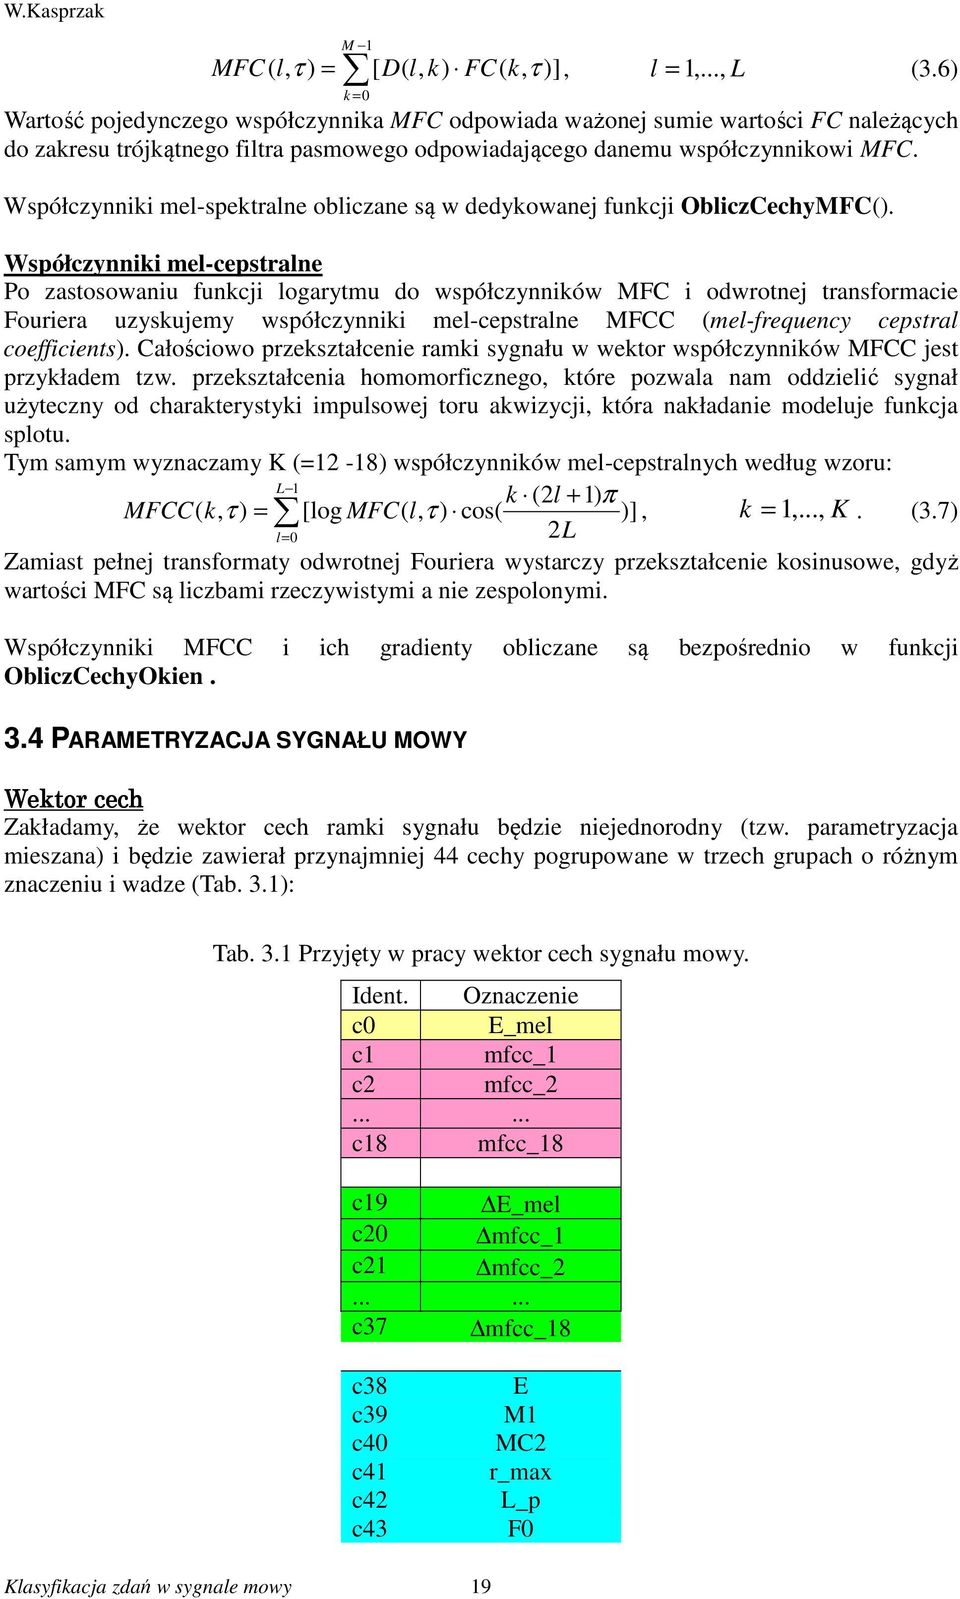 Współczynniki mel-spektralne obliczane są w dedykowanej funkcji ObliczCechyMFC().